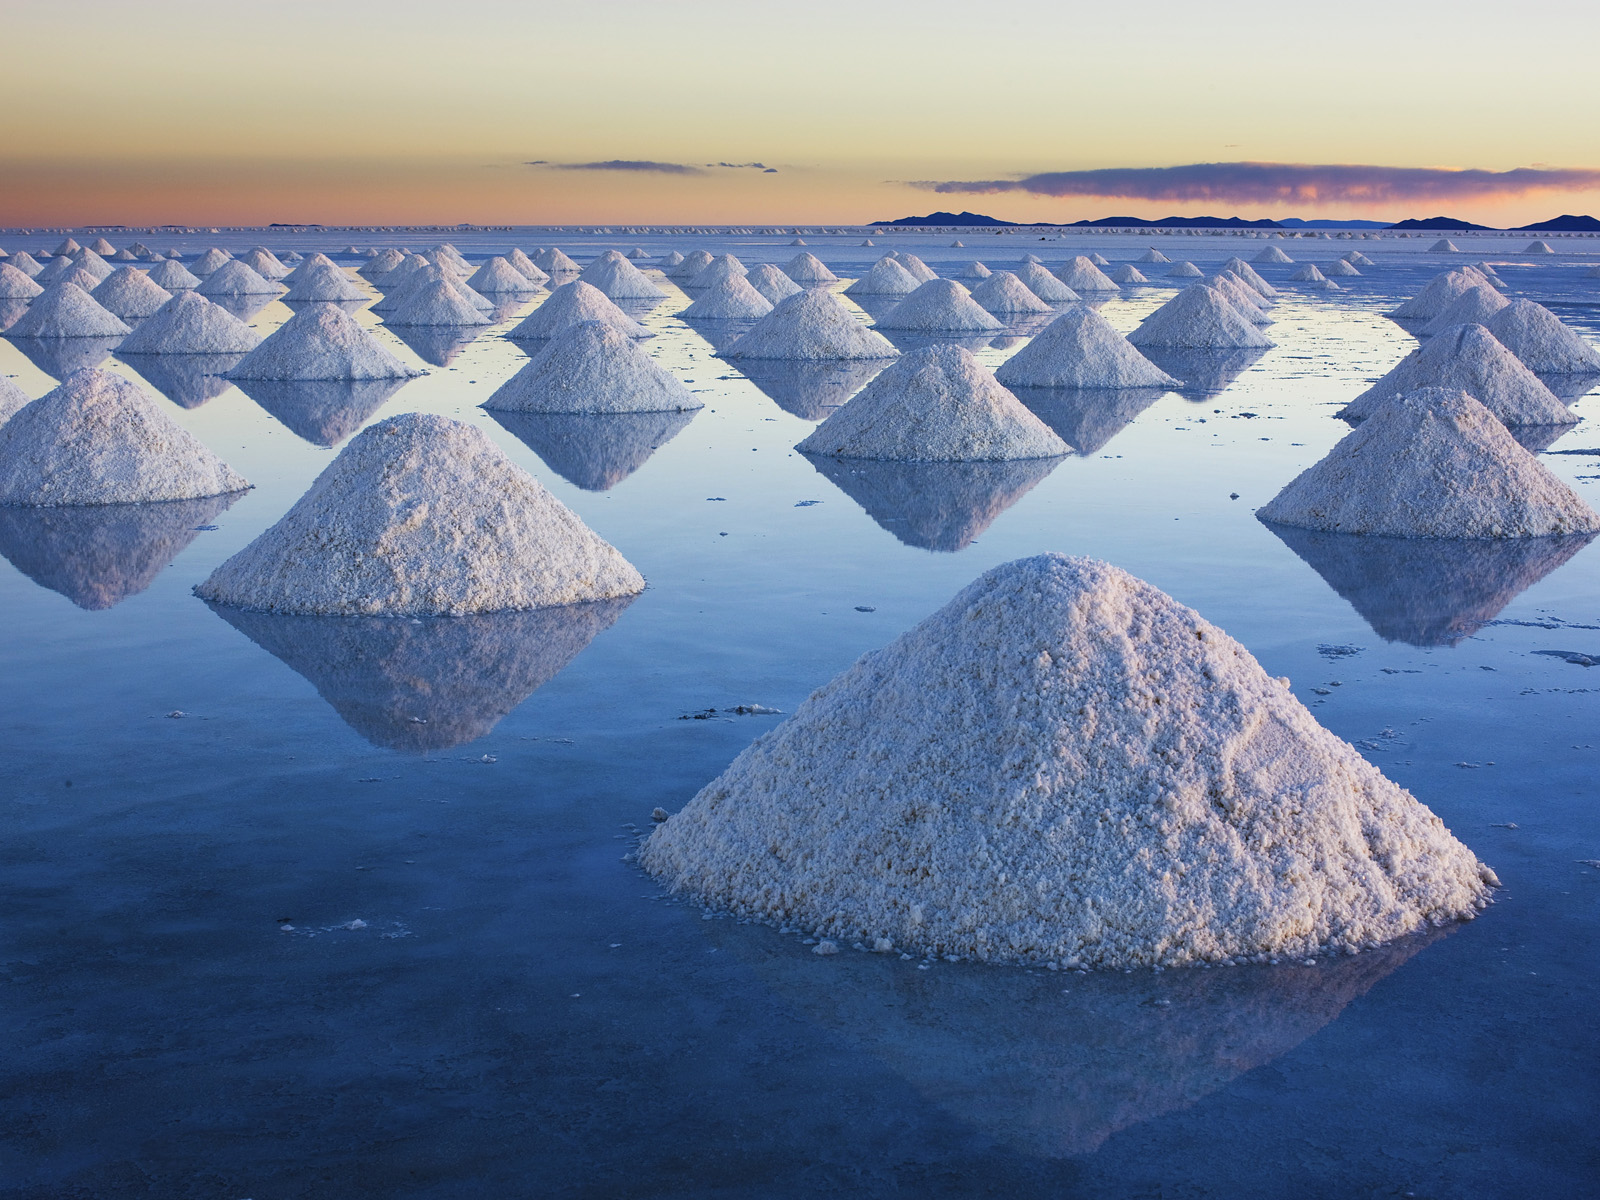 Salt_Mounds_at_Salar_de_Uyuni_Bolivia